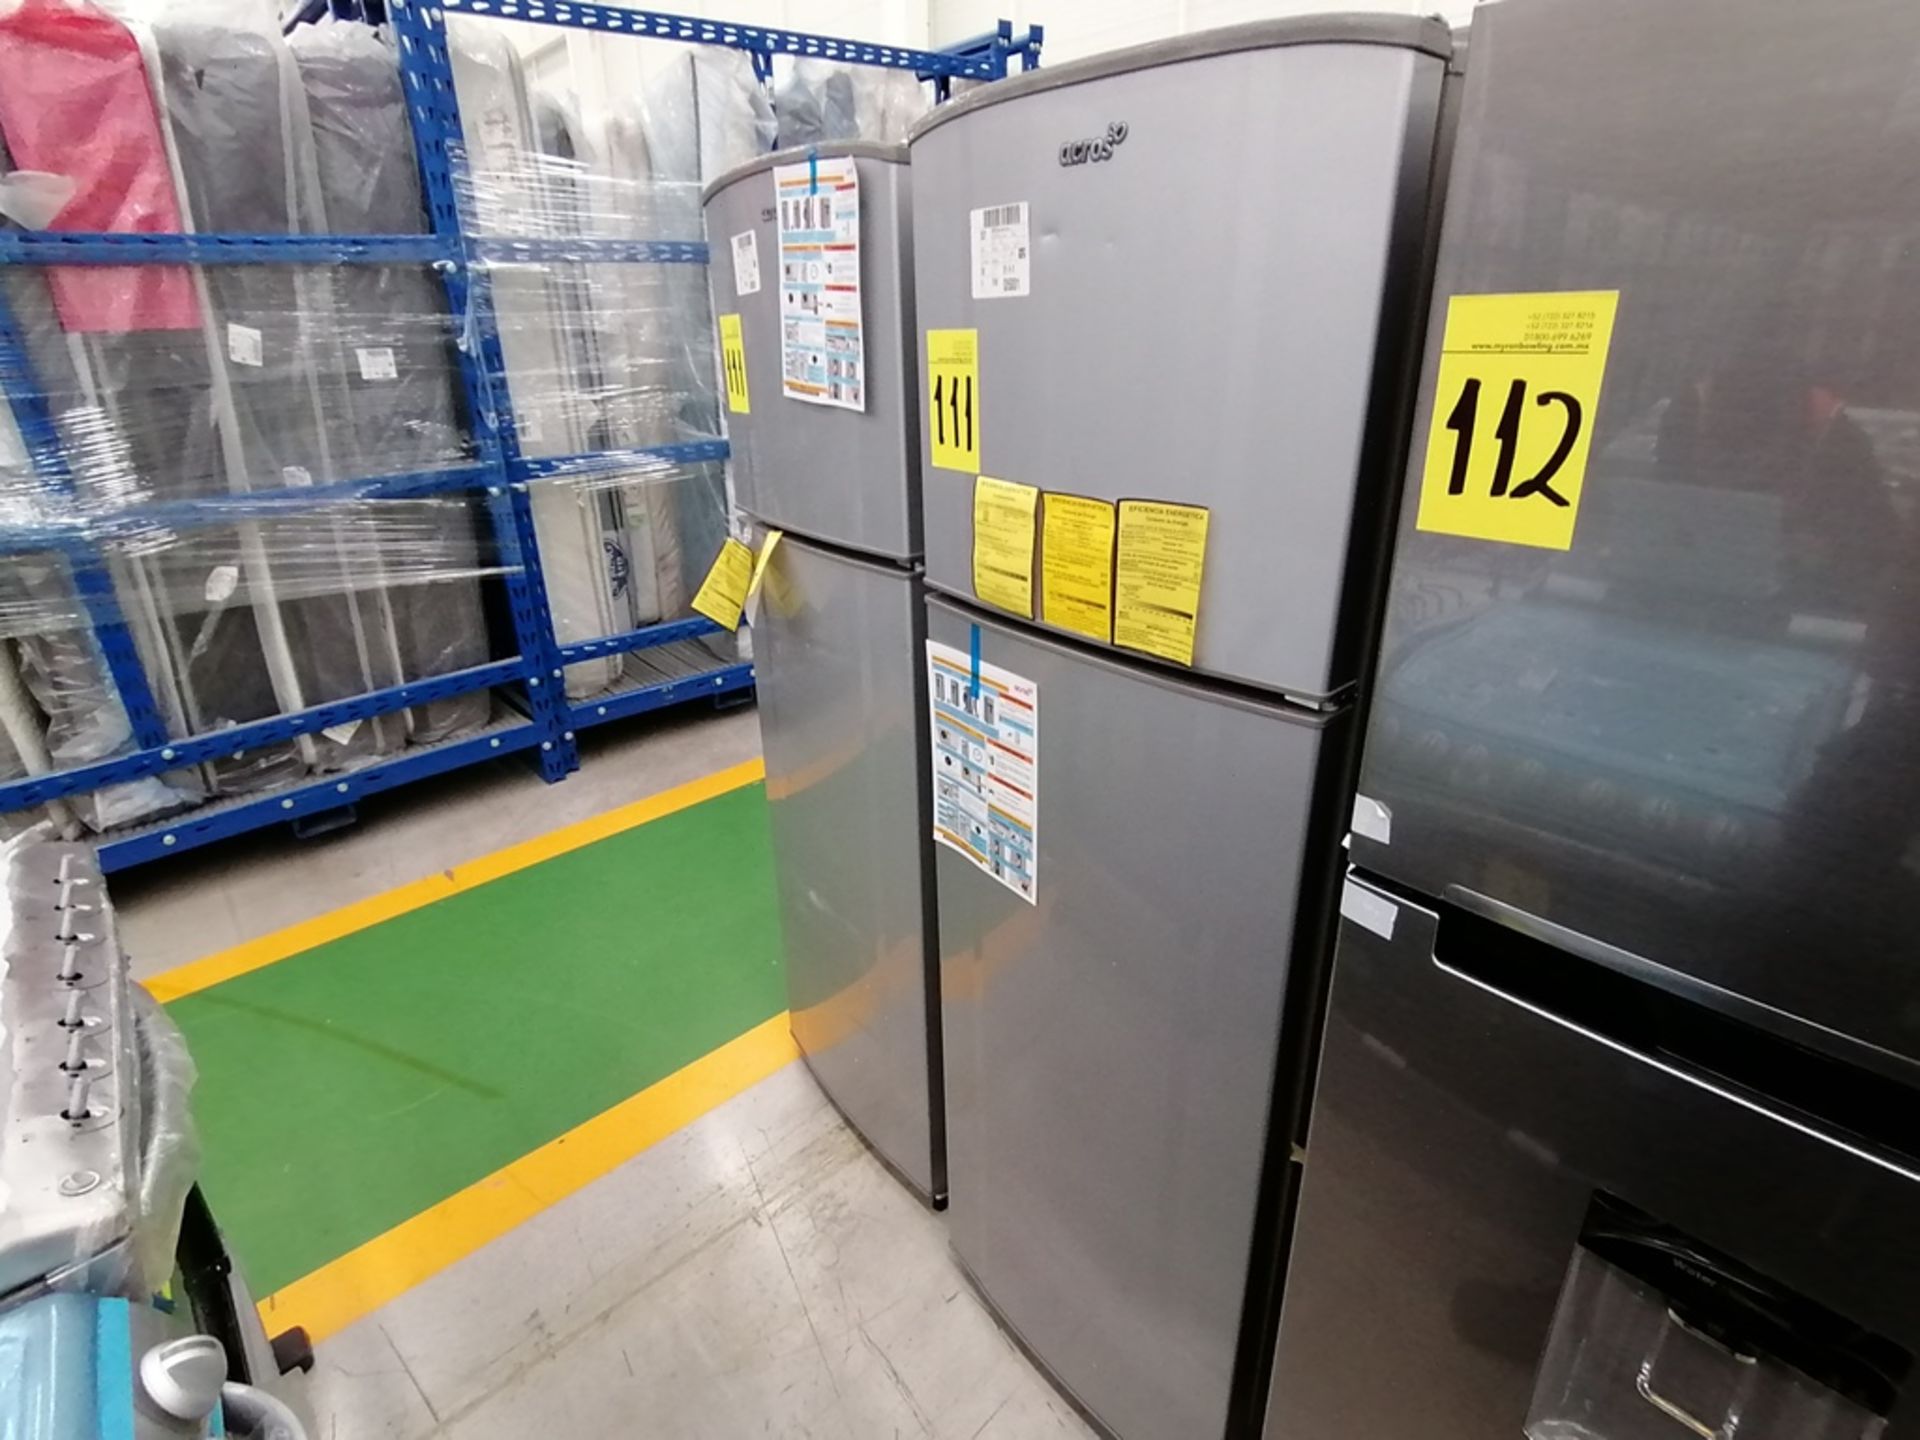 Lote de 2 refrigeradores incluye: 1 Refrigerador, Marca Acros, Modelo AT9007G, Serie VRA4332547, Co